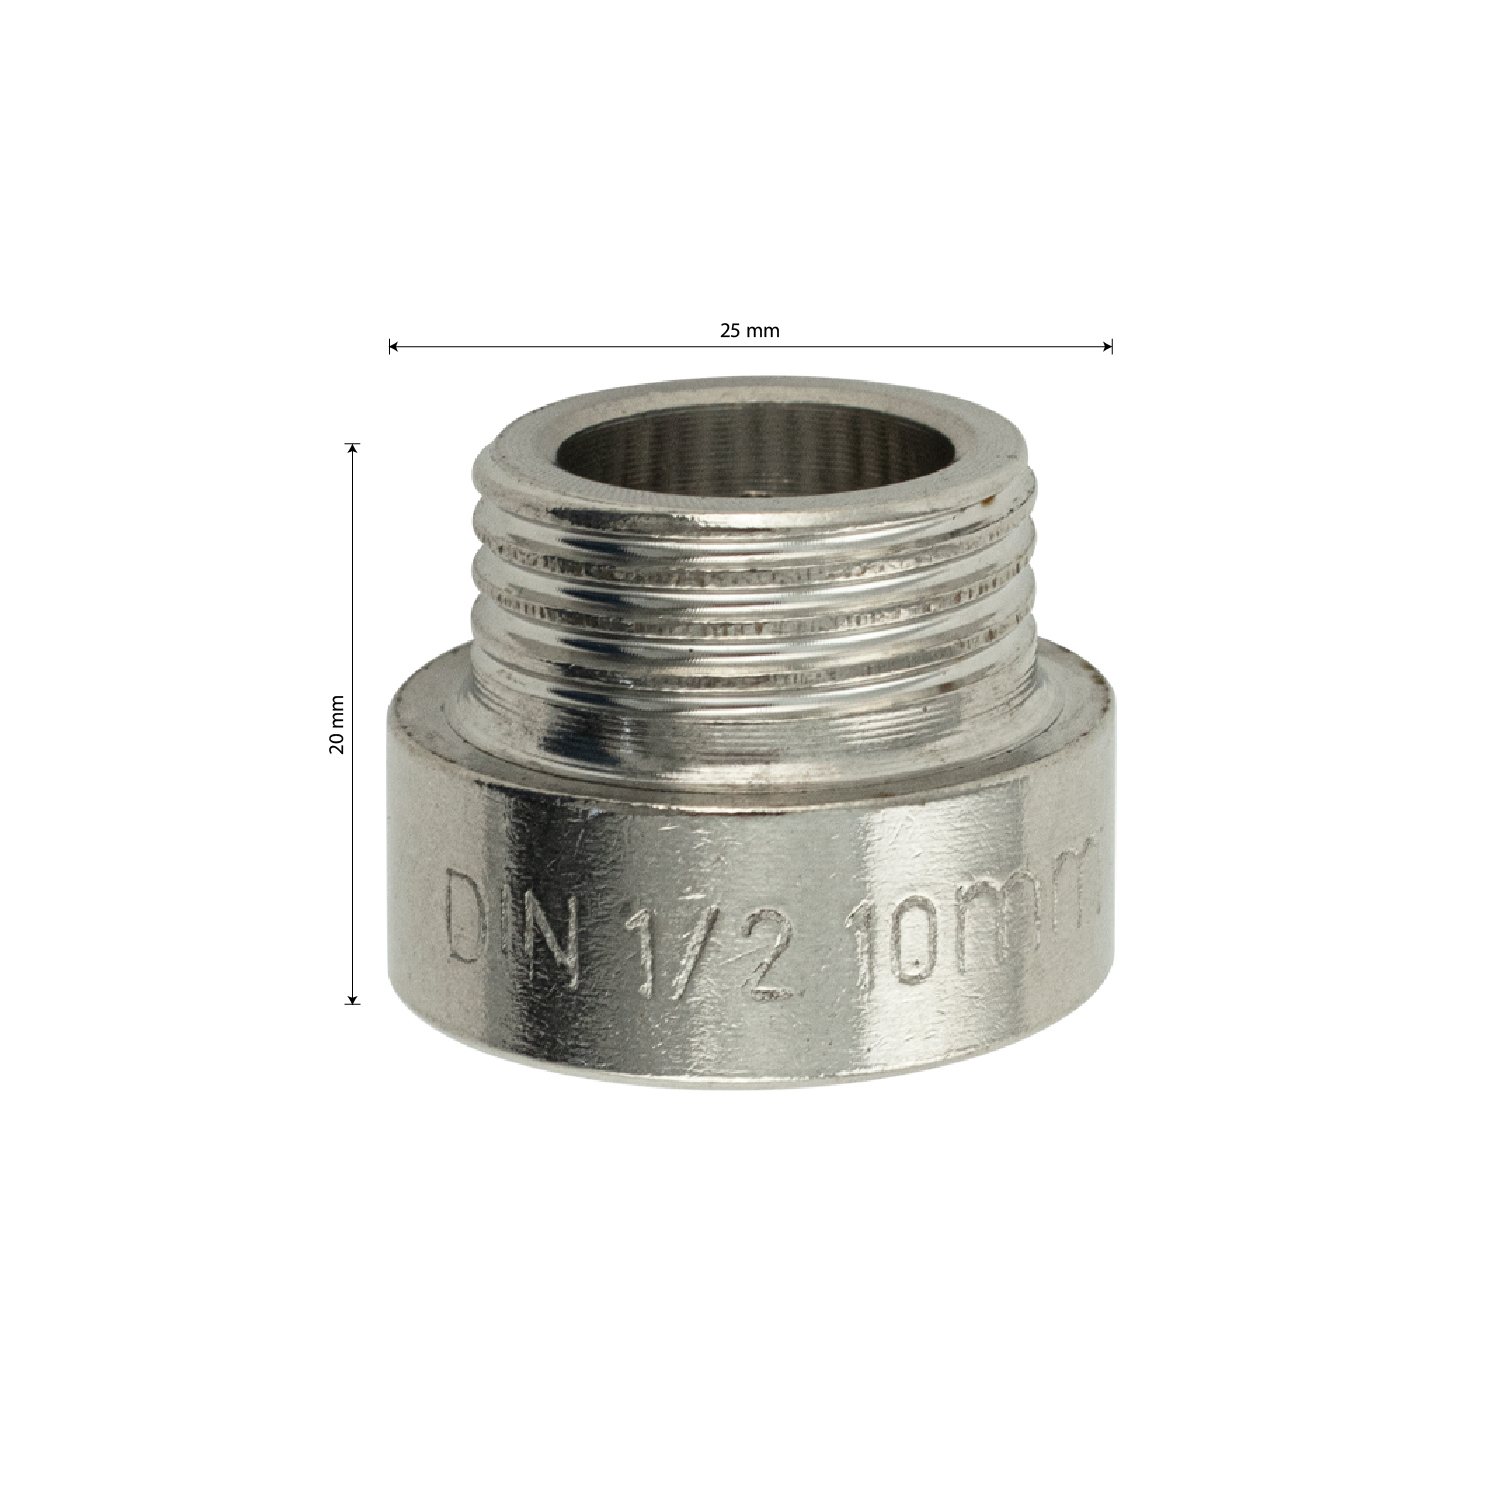 МАК - Удлинитель 10 мм, 1/2м х 1/2п, из нержавеющей стали марки 304